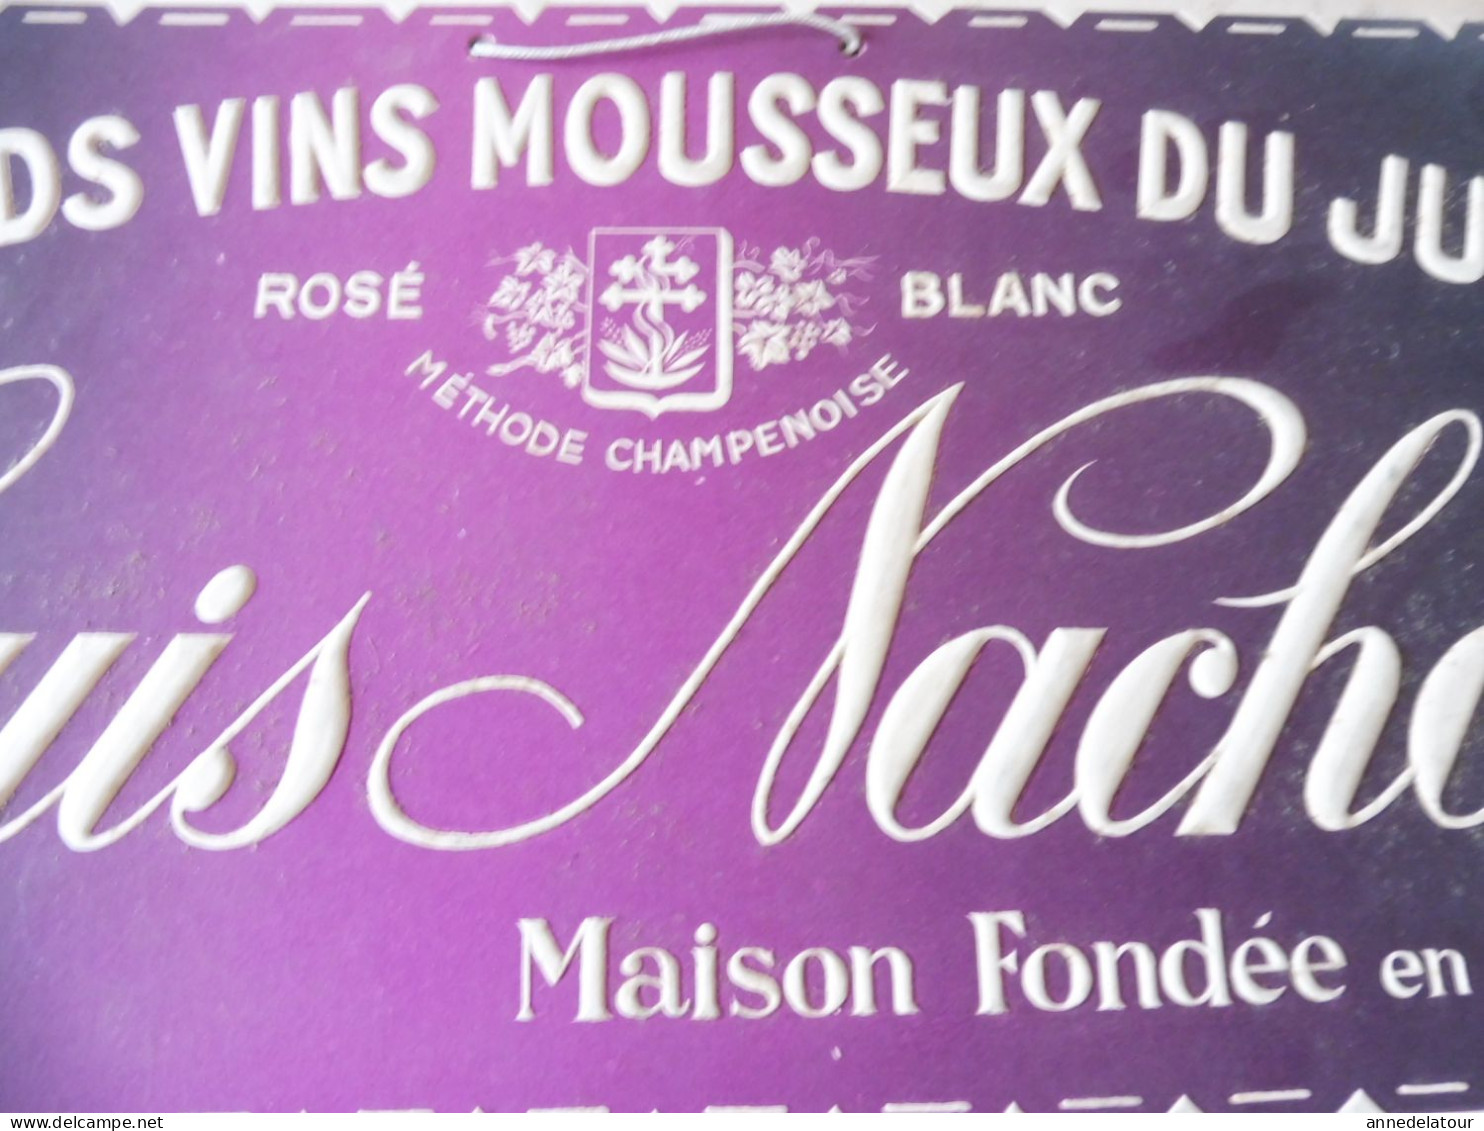 Plaque publicitaire relief :  Louis Nachon GRANDS VINS MOUSSEUX DU JURA    dimension   33x 16cm  (Maison fondée en 1882)